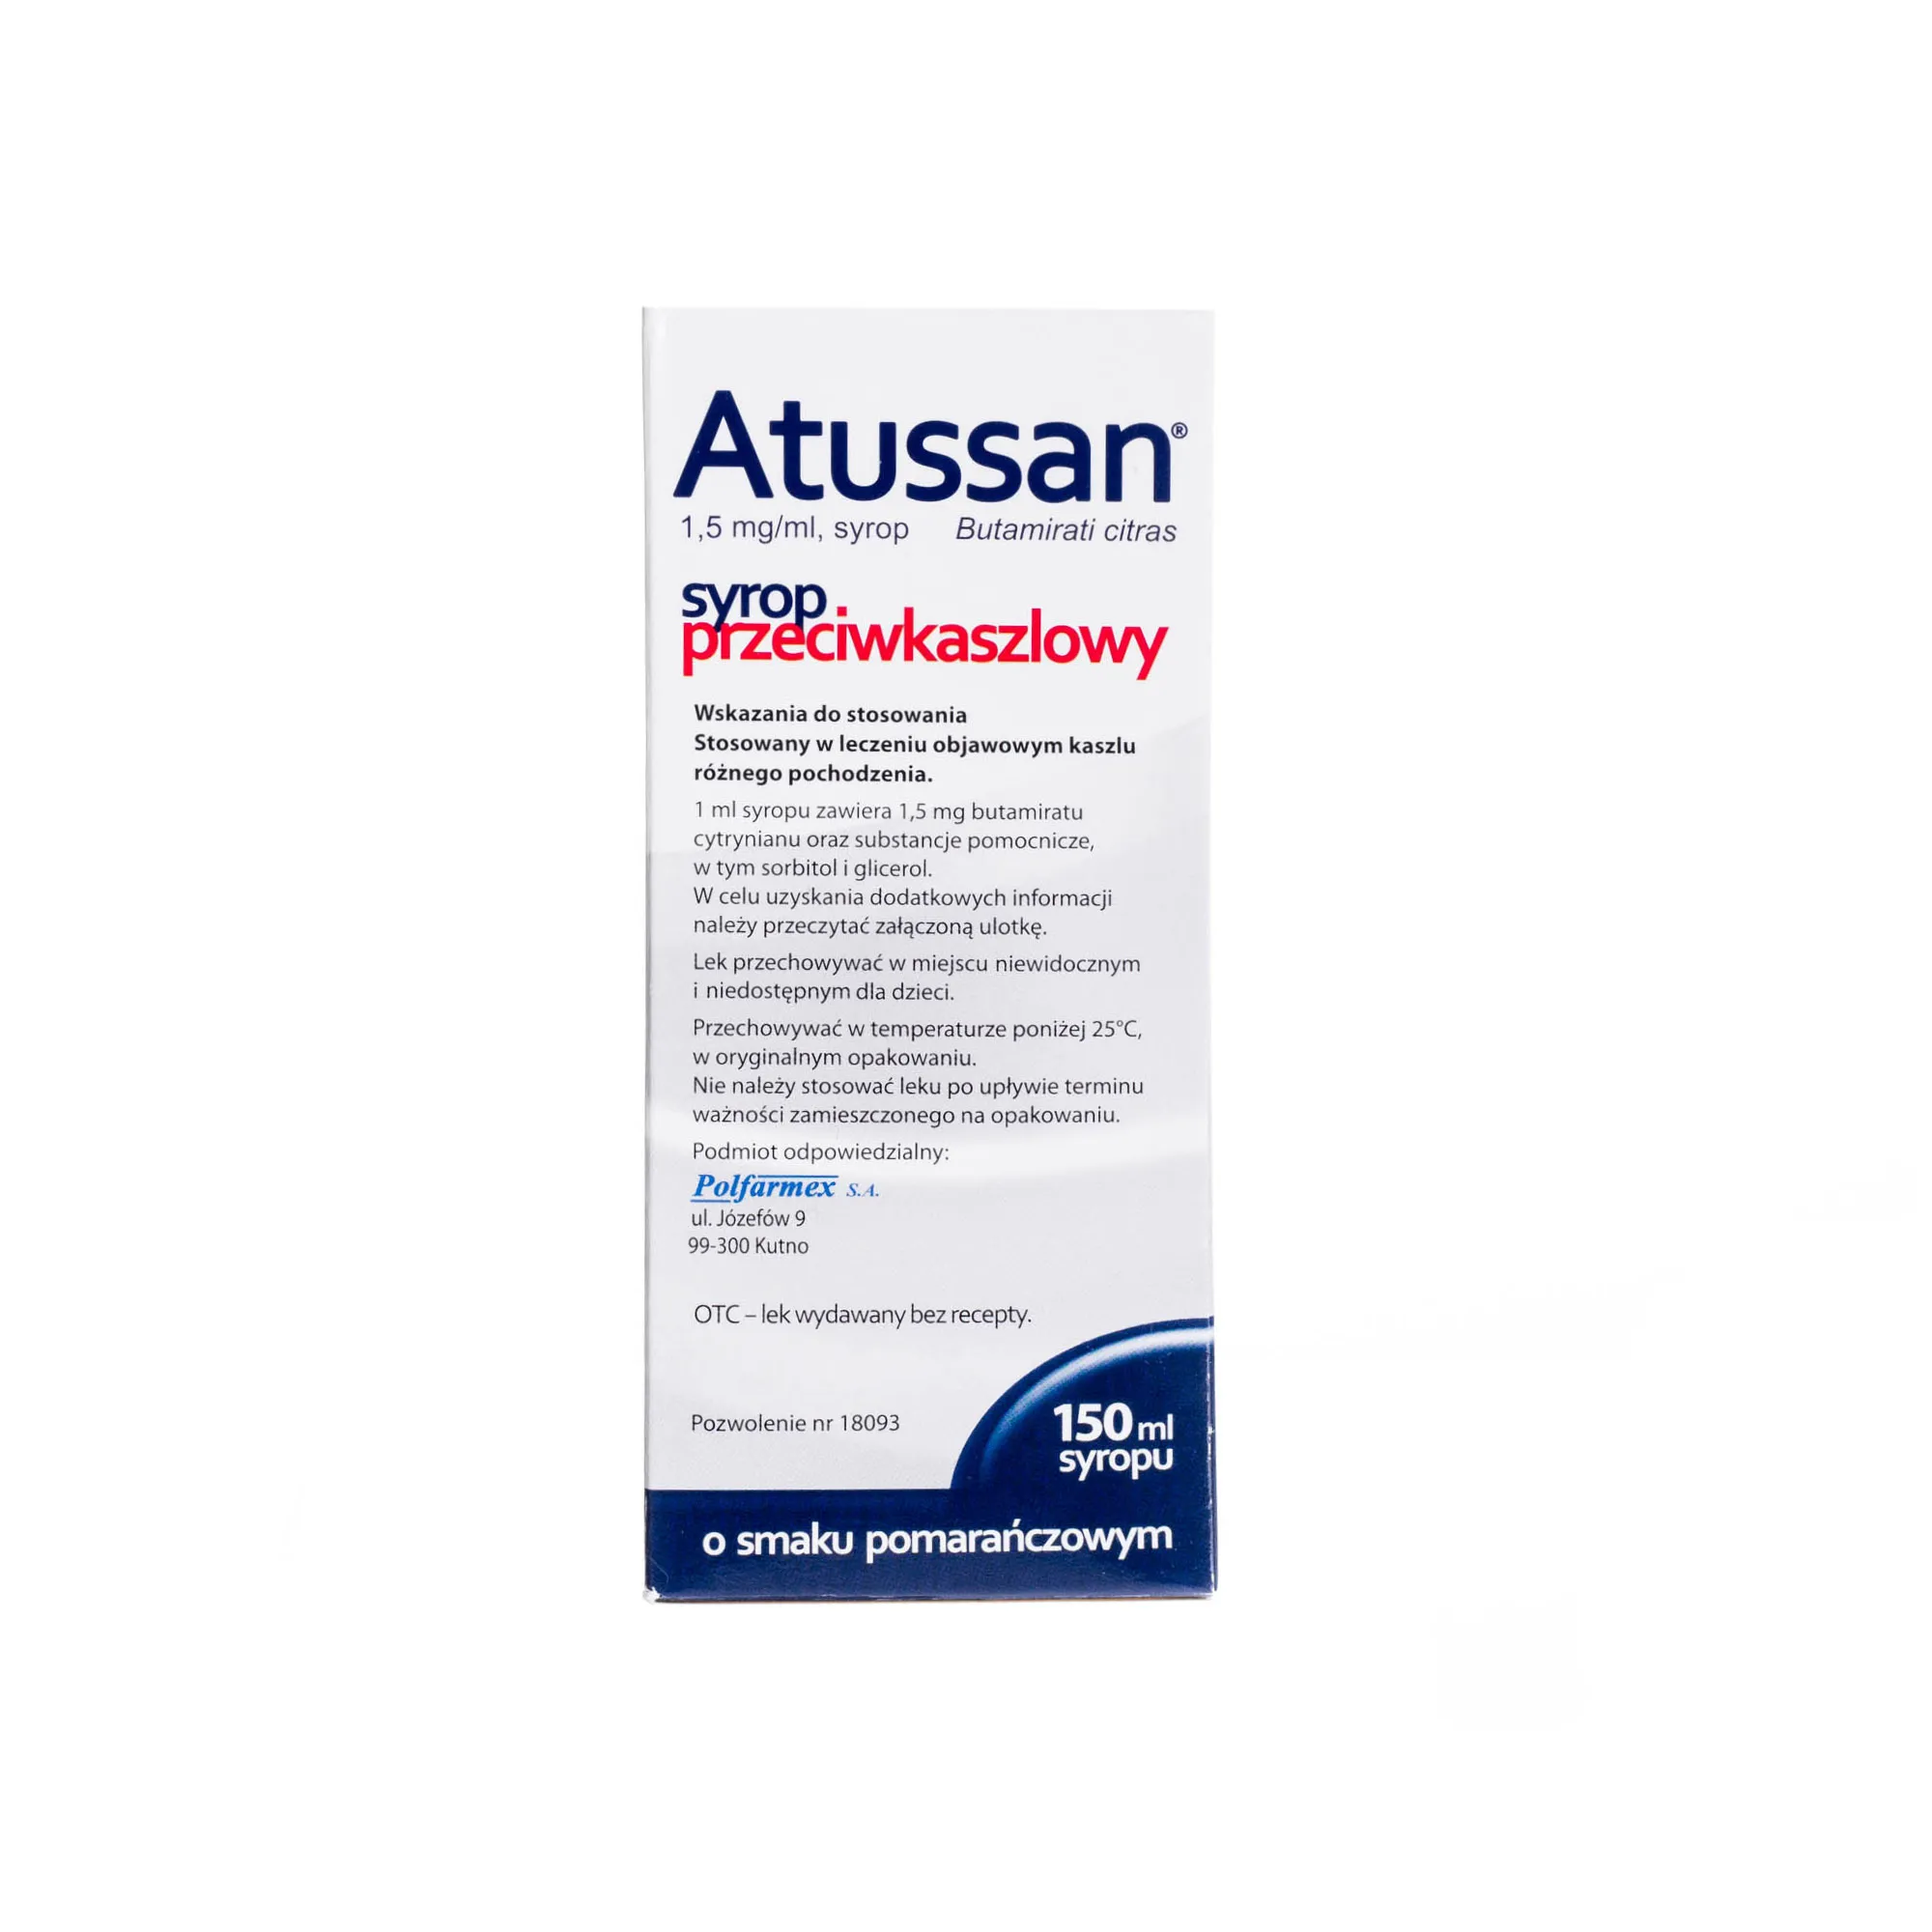 Atussan - syrop przeciwkaszlowy stosowany w kaszlu różnego pochodzenia, 150 ml syropu o smaku pomarańczowym 